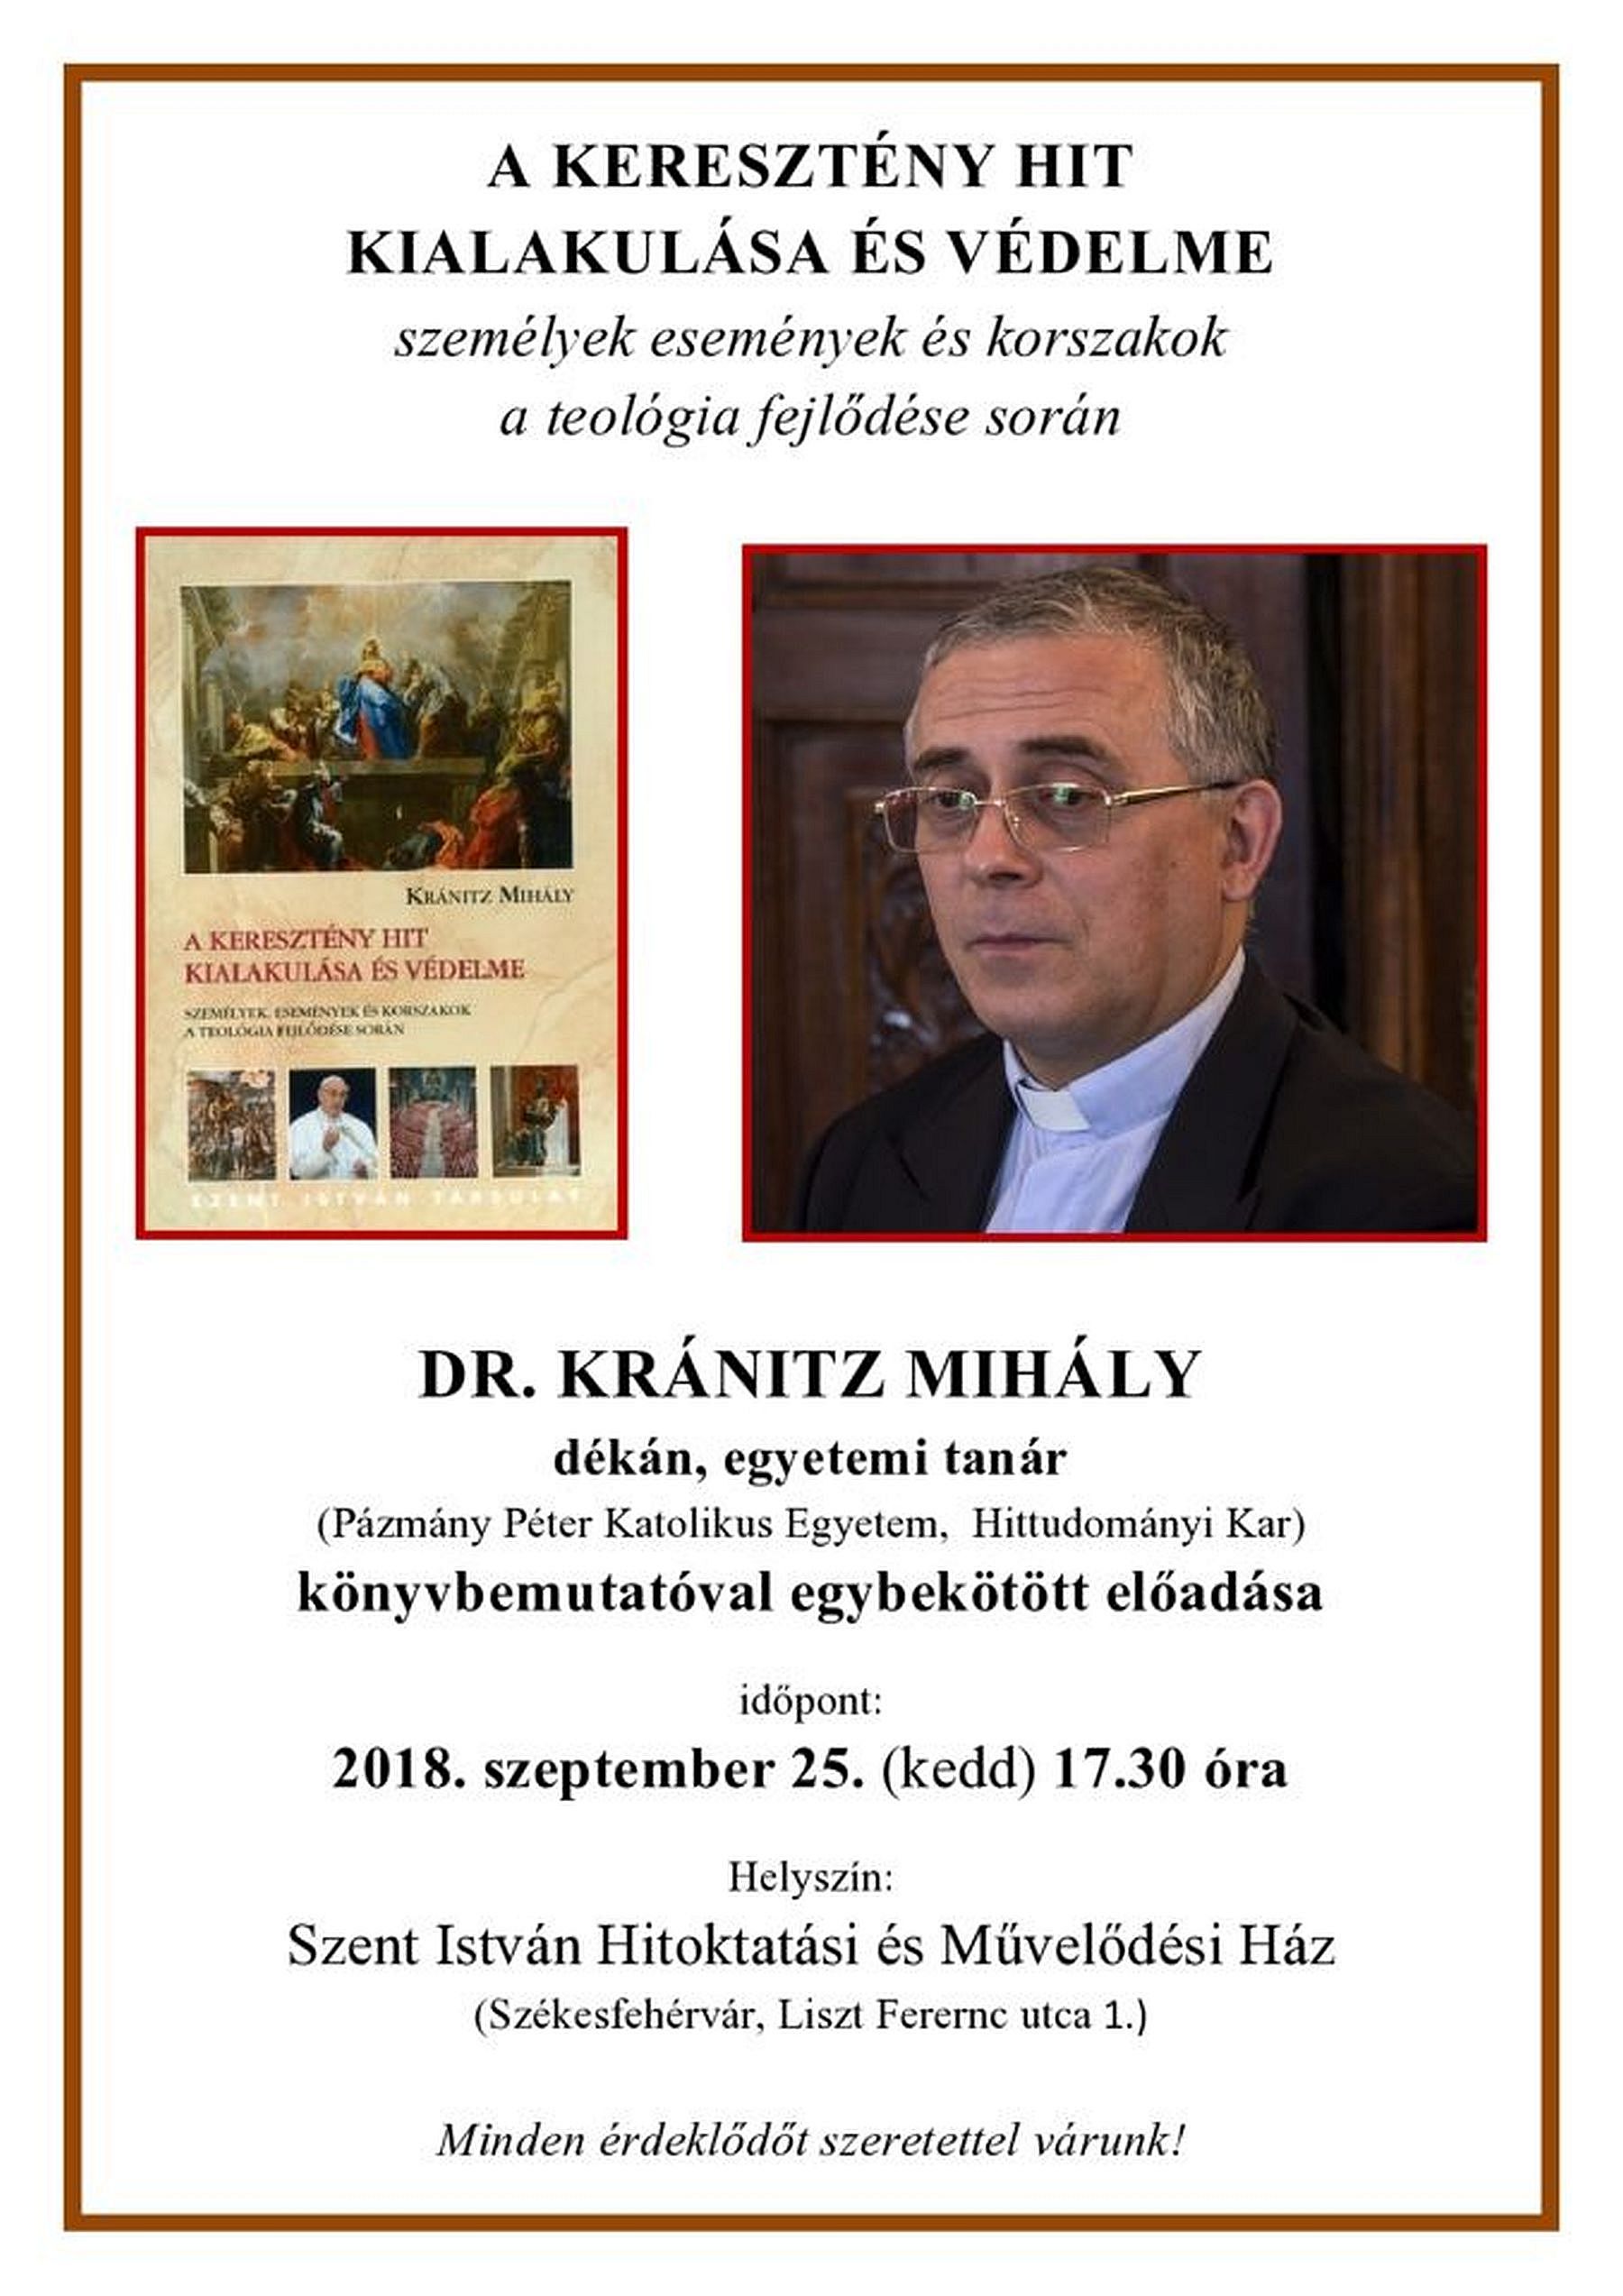 A keresztény hit kialakulása és védelme - Dr. Kránitz Mihály könyvbemutatója és előadása